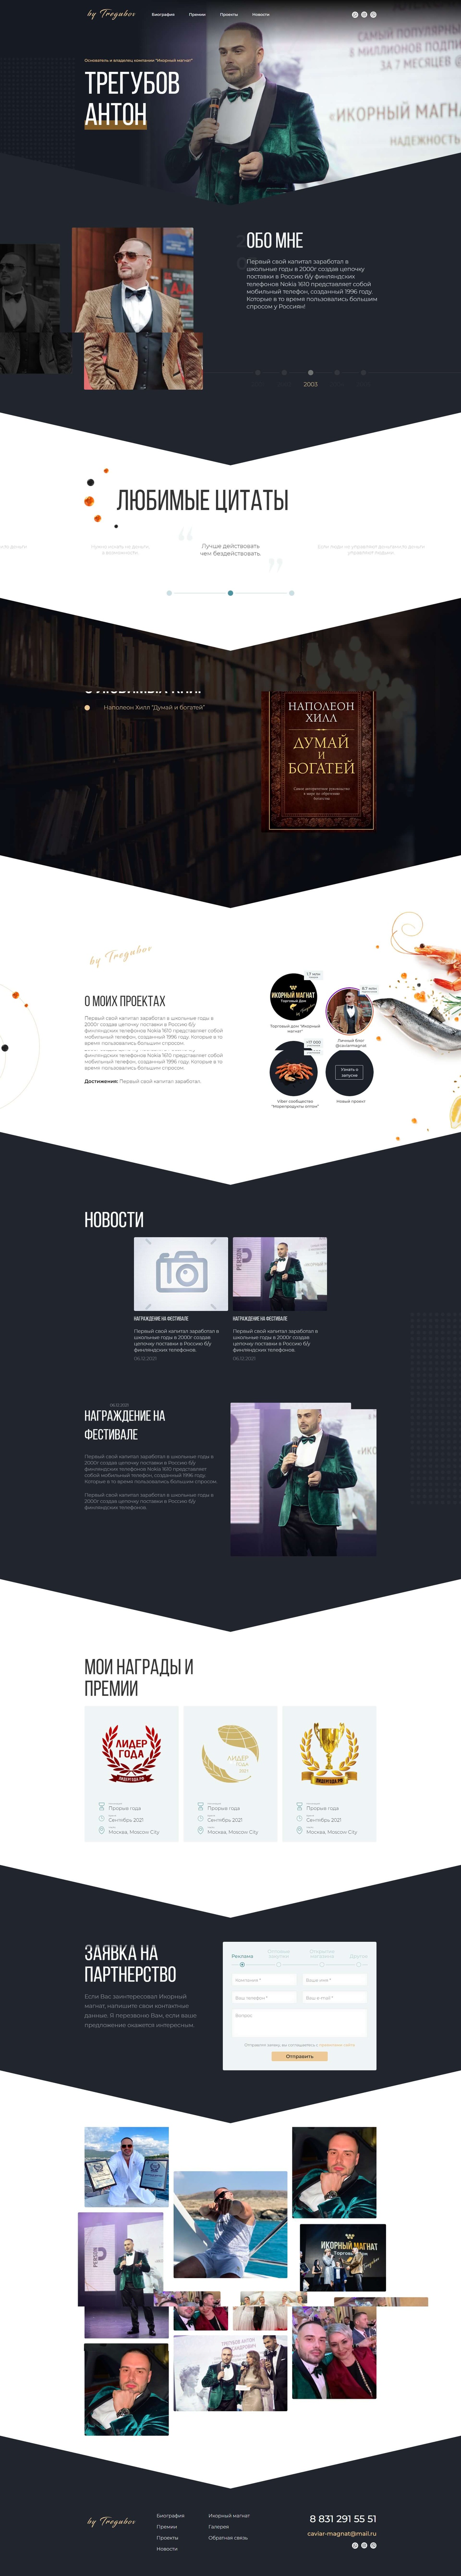 Разработка сайта для блогера и бизнесмена Антона Трегубова